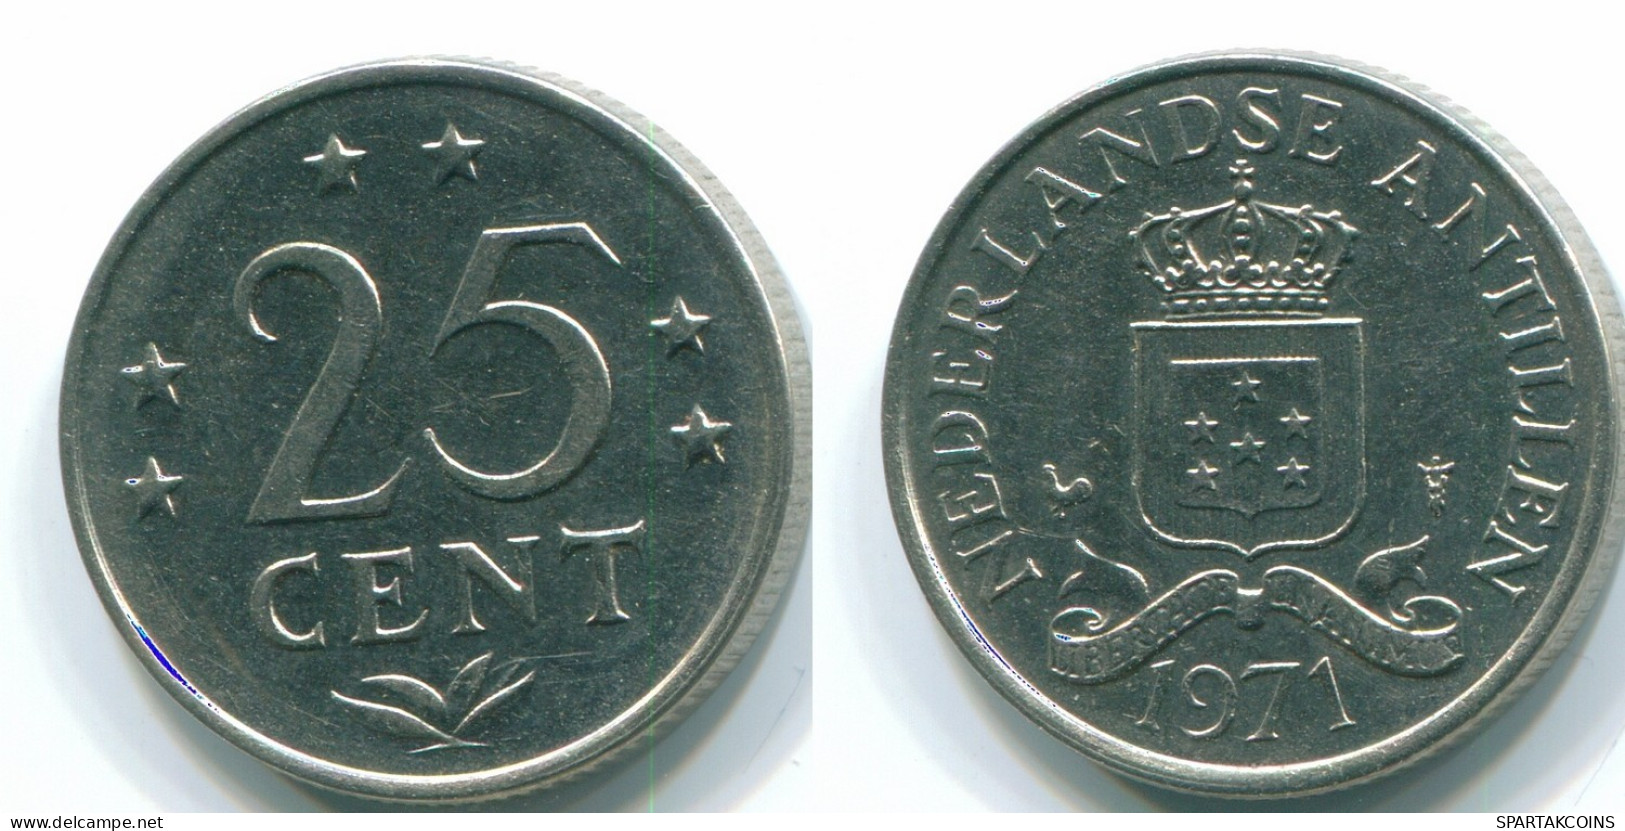 25 CENTS 1971 NIEDERLÄNDISCHE ANTILLEN Nickel Koloniale Münze #S11487.D.A - Antillas Neerlandesas